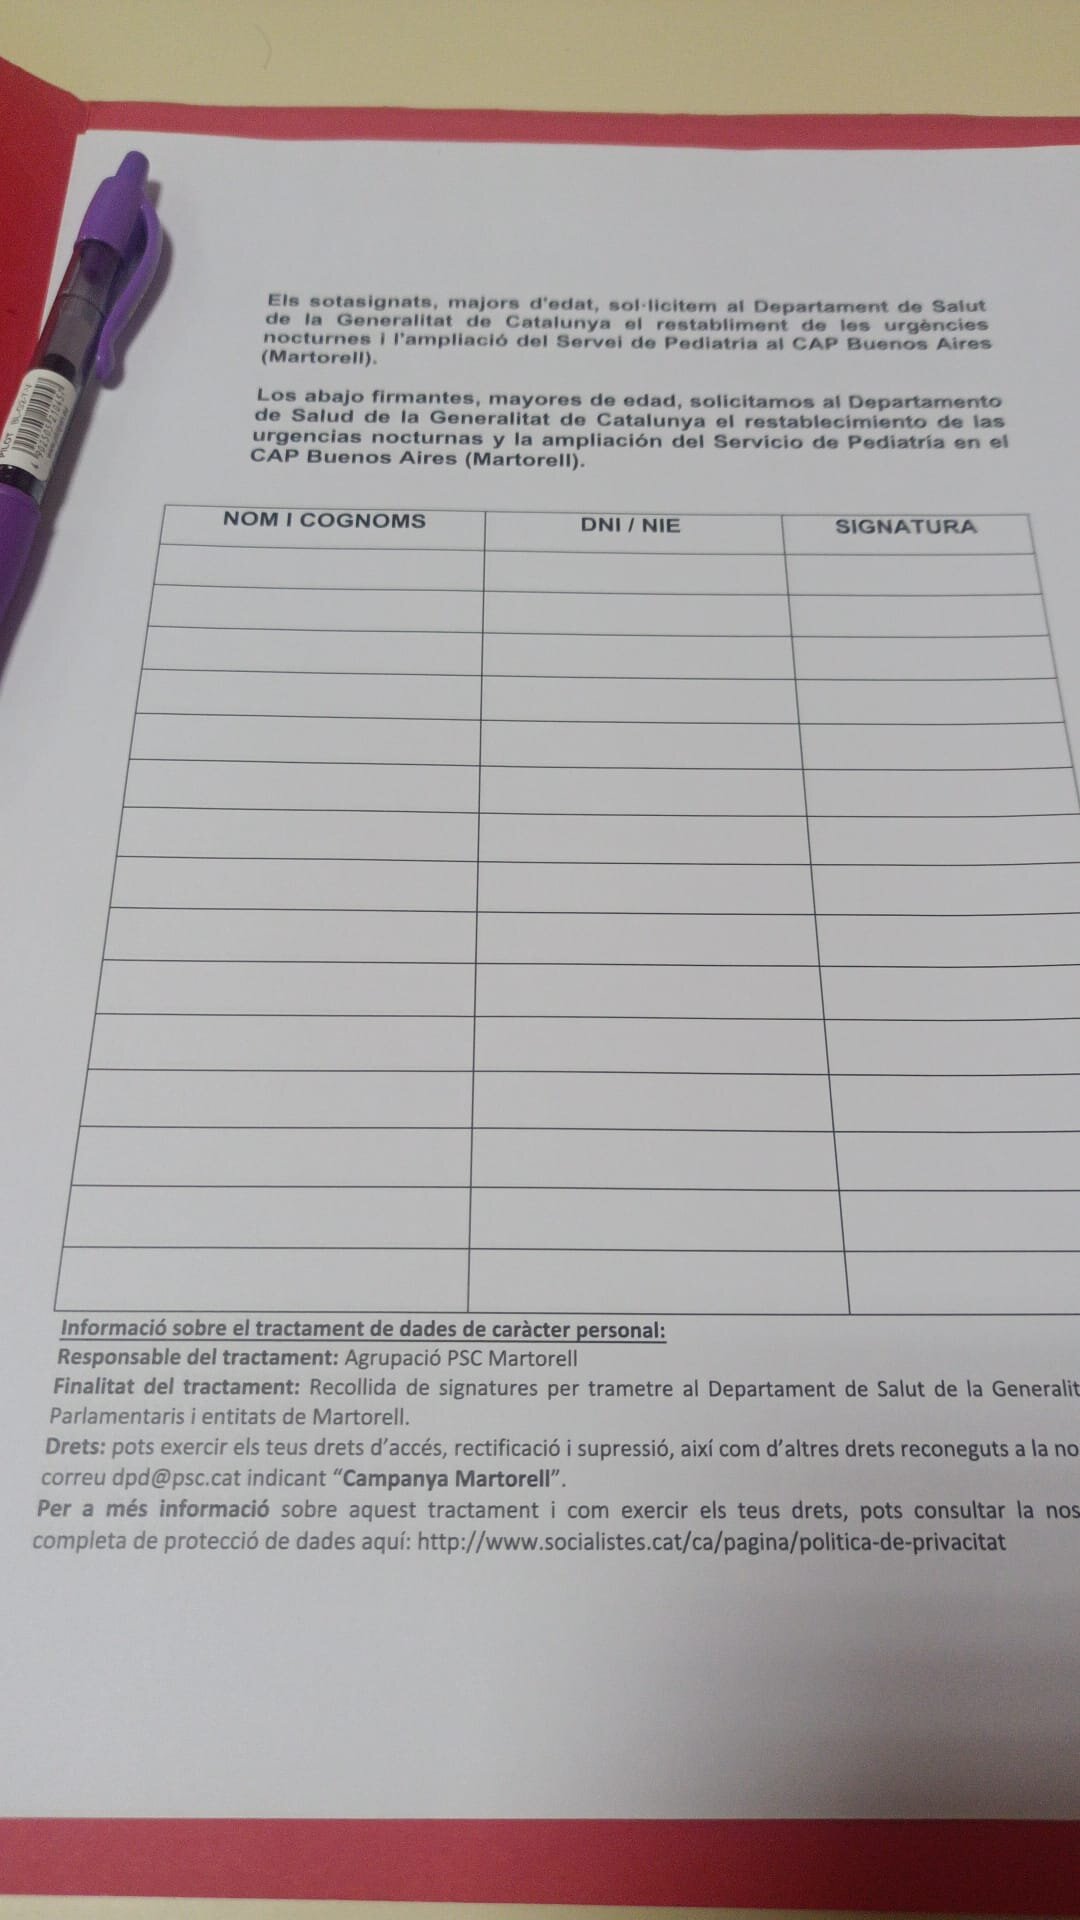 La Bustia recollida signatures PSC Martorell